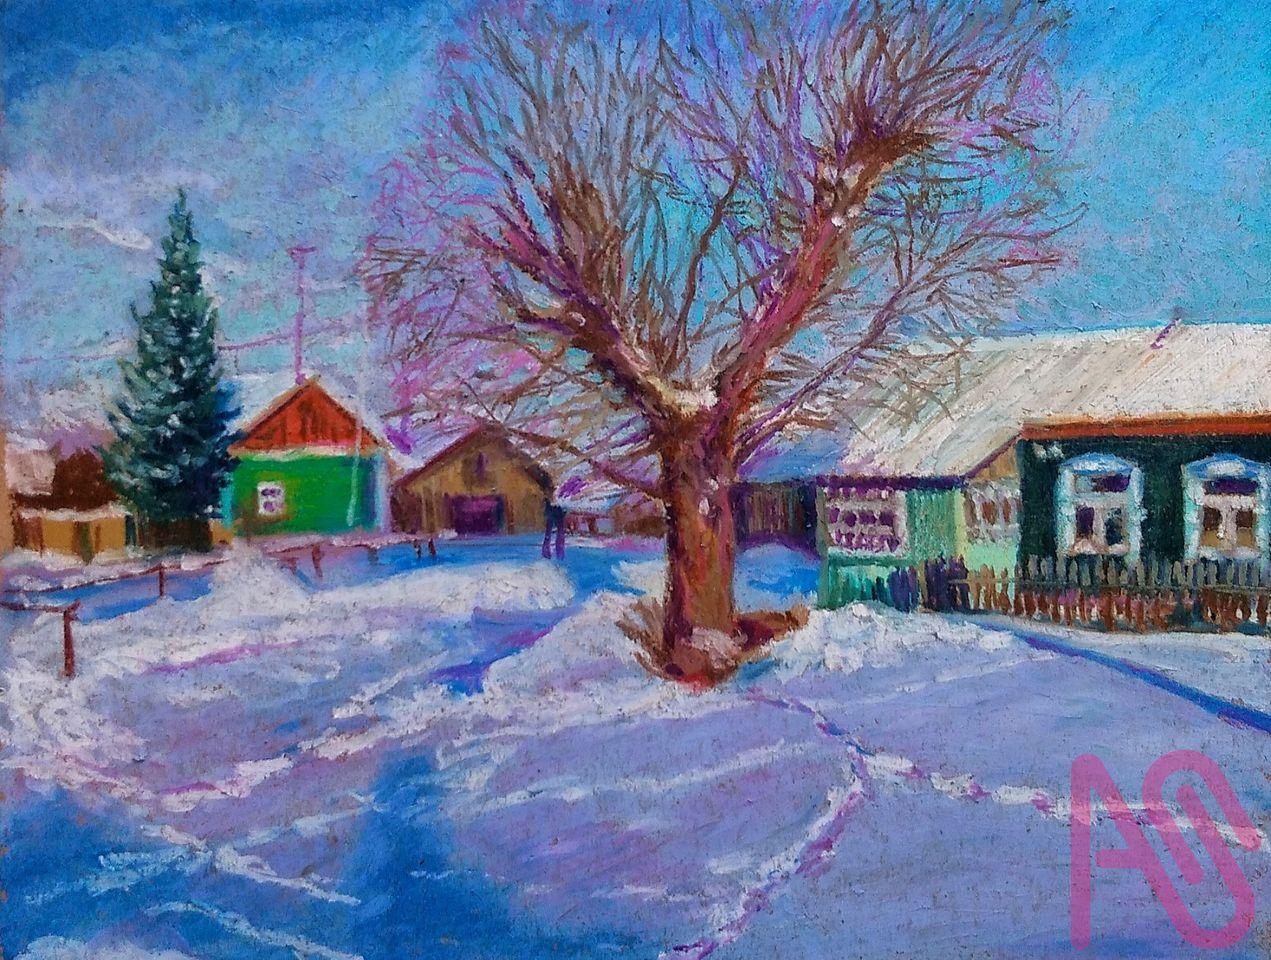 Зима в деревне - Фотообои на заказ в интернет магазин arte.ru. Заказать  обои Зима в деревне (177)